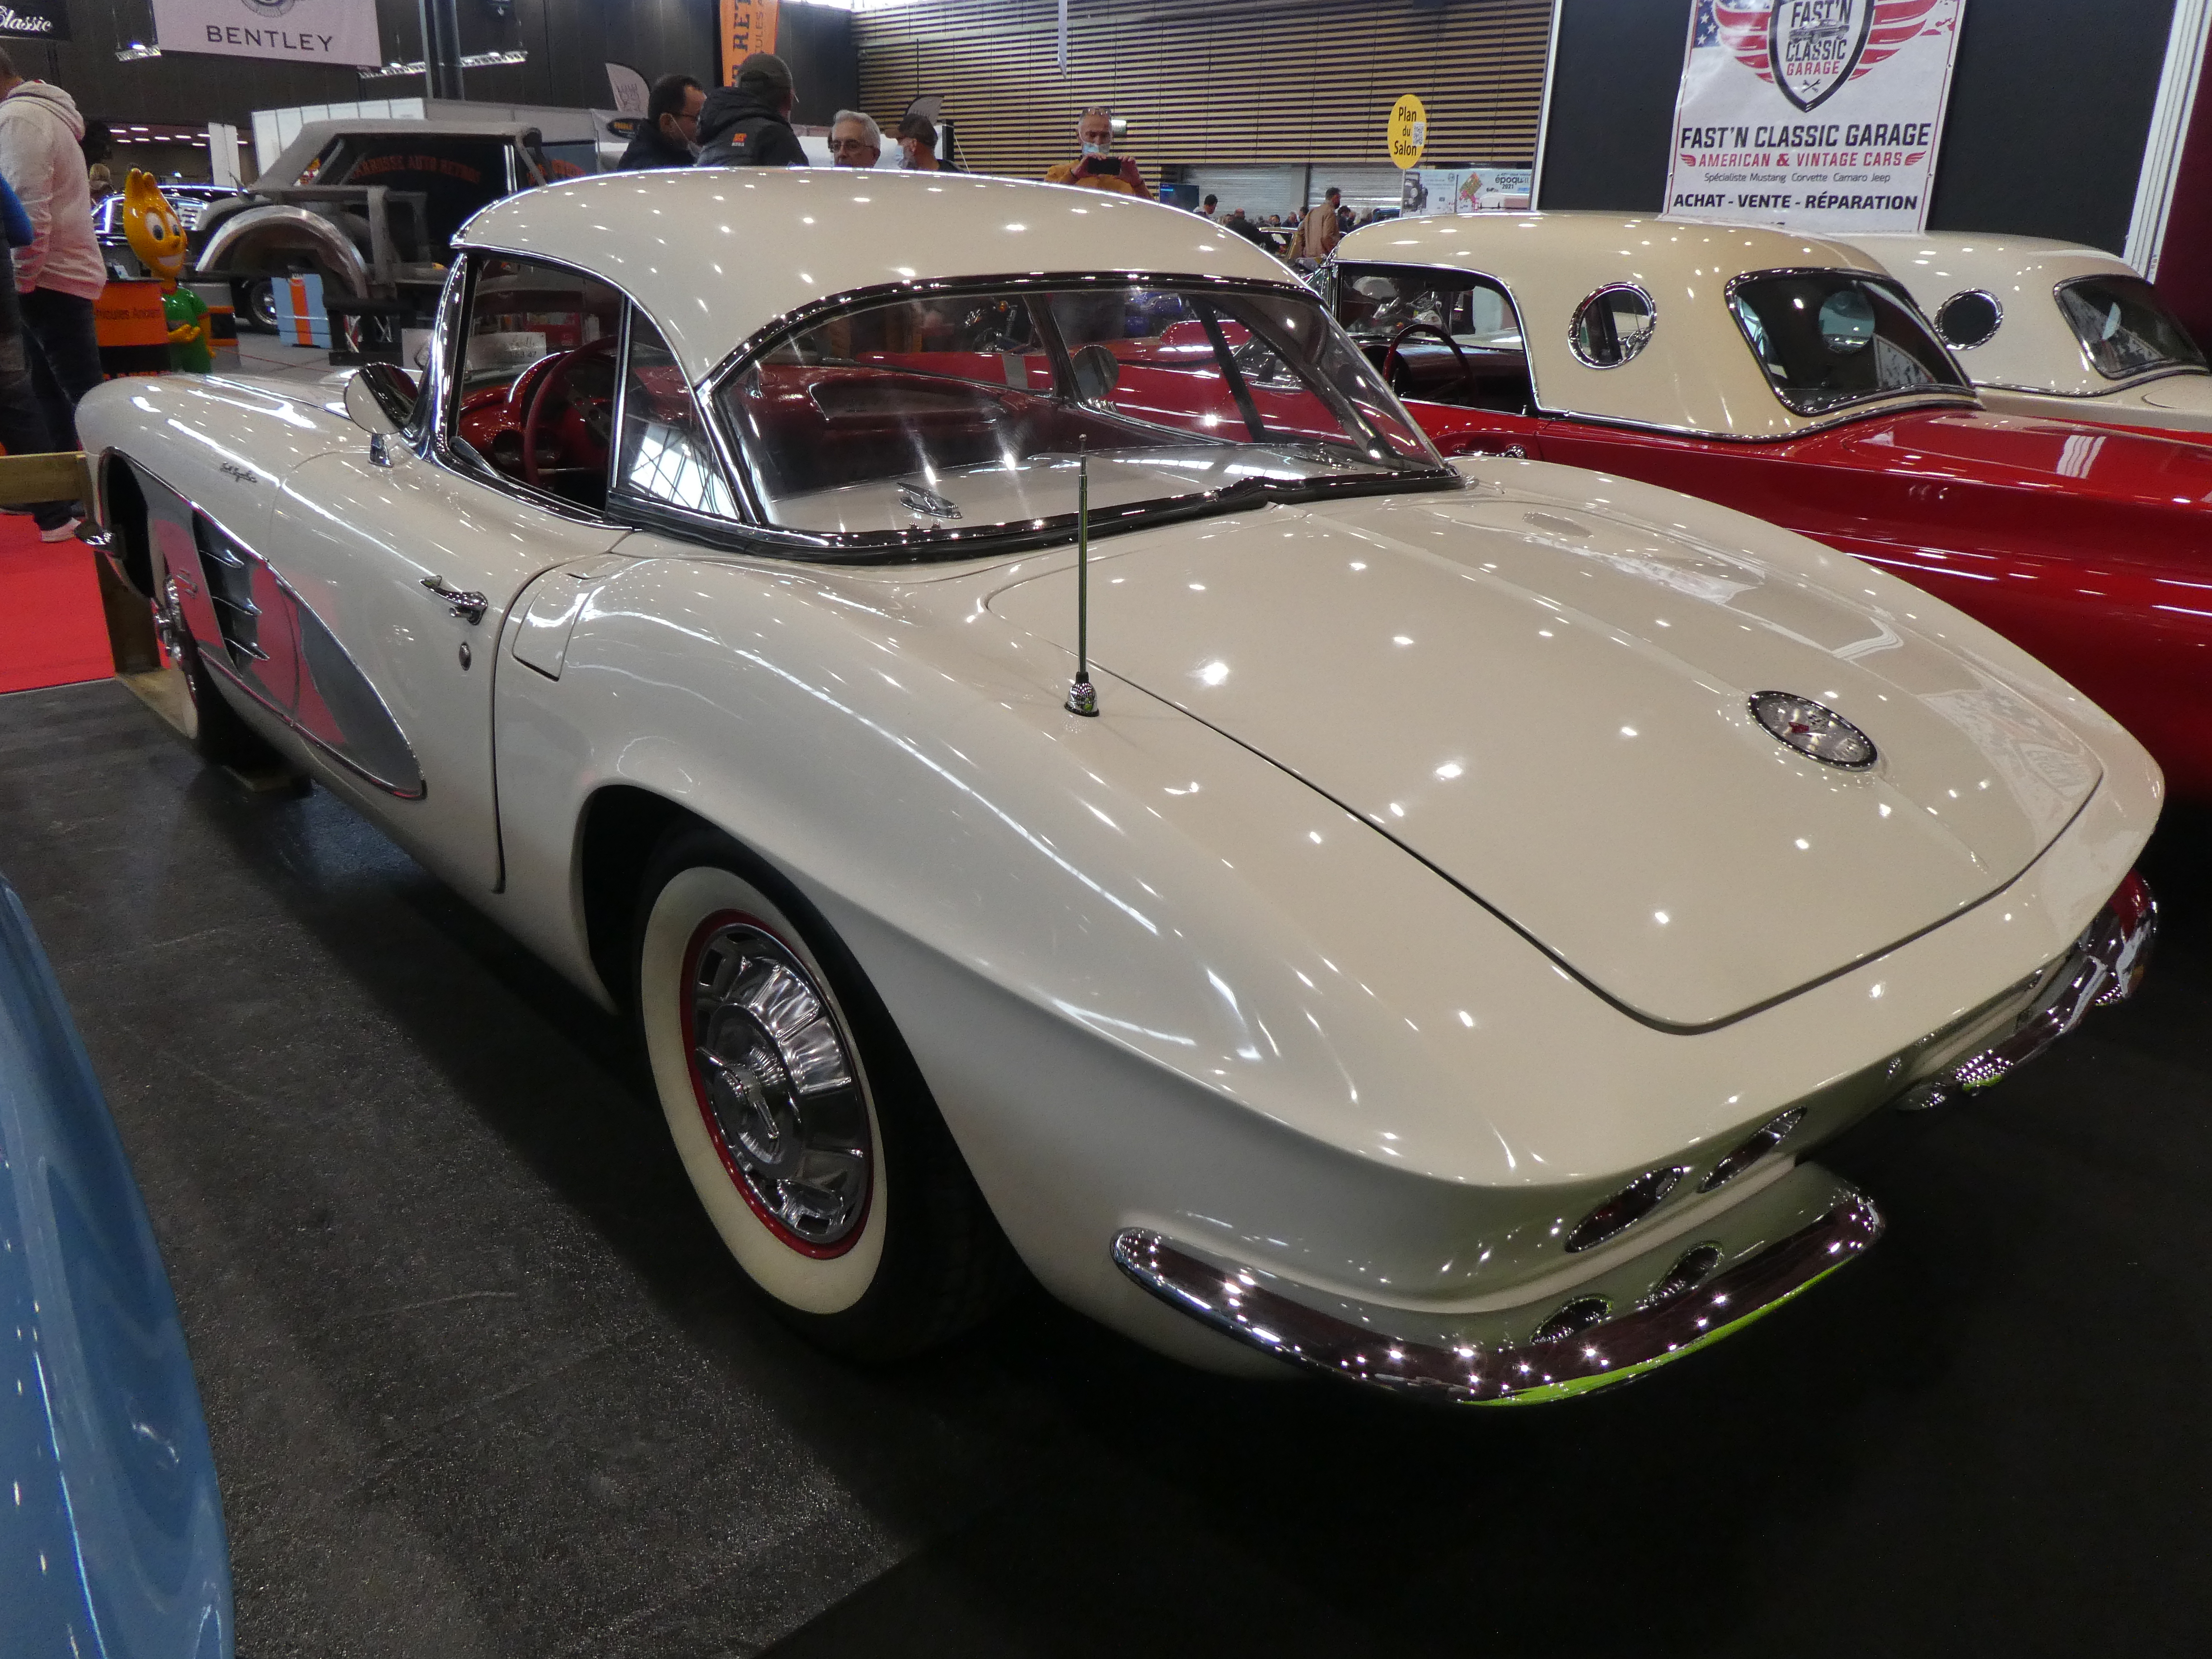 CHEVROLET Corvette C1 Fuel Injection de 1961 - Epoqu’auto 2021